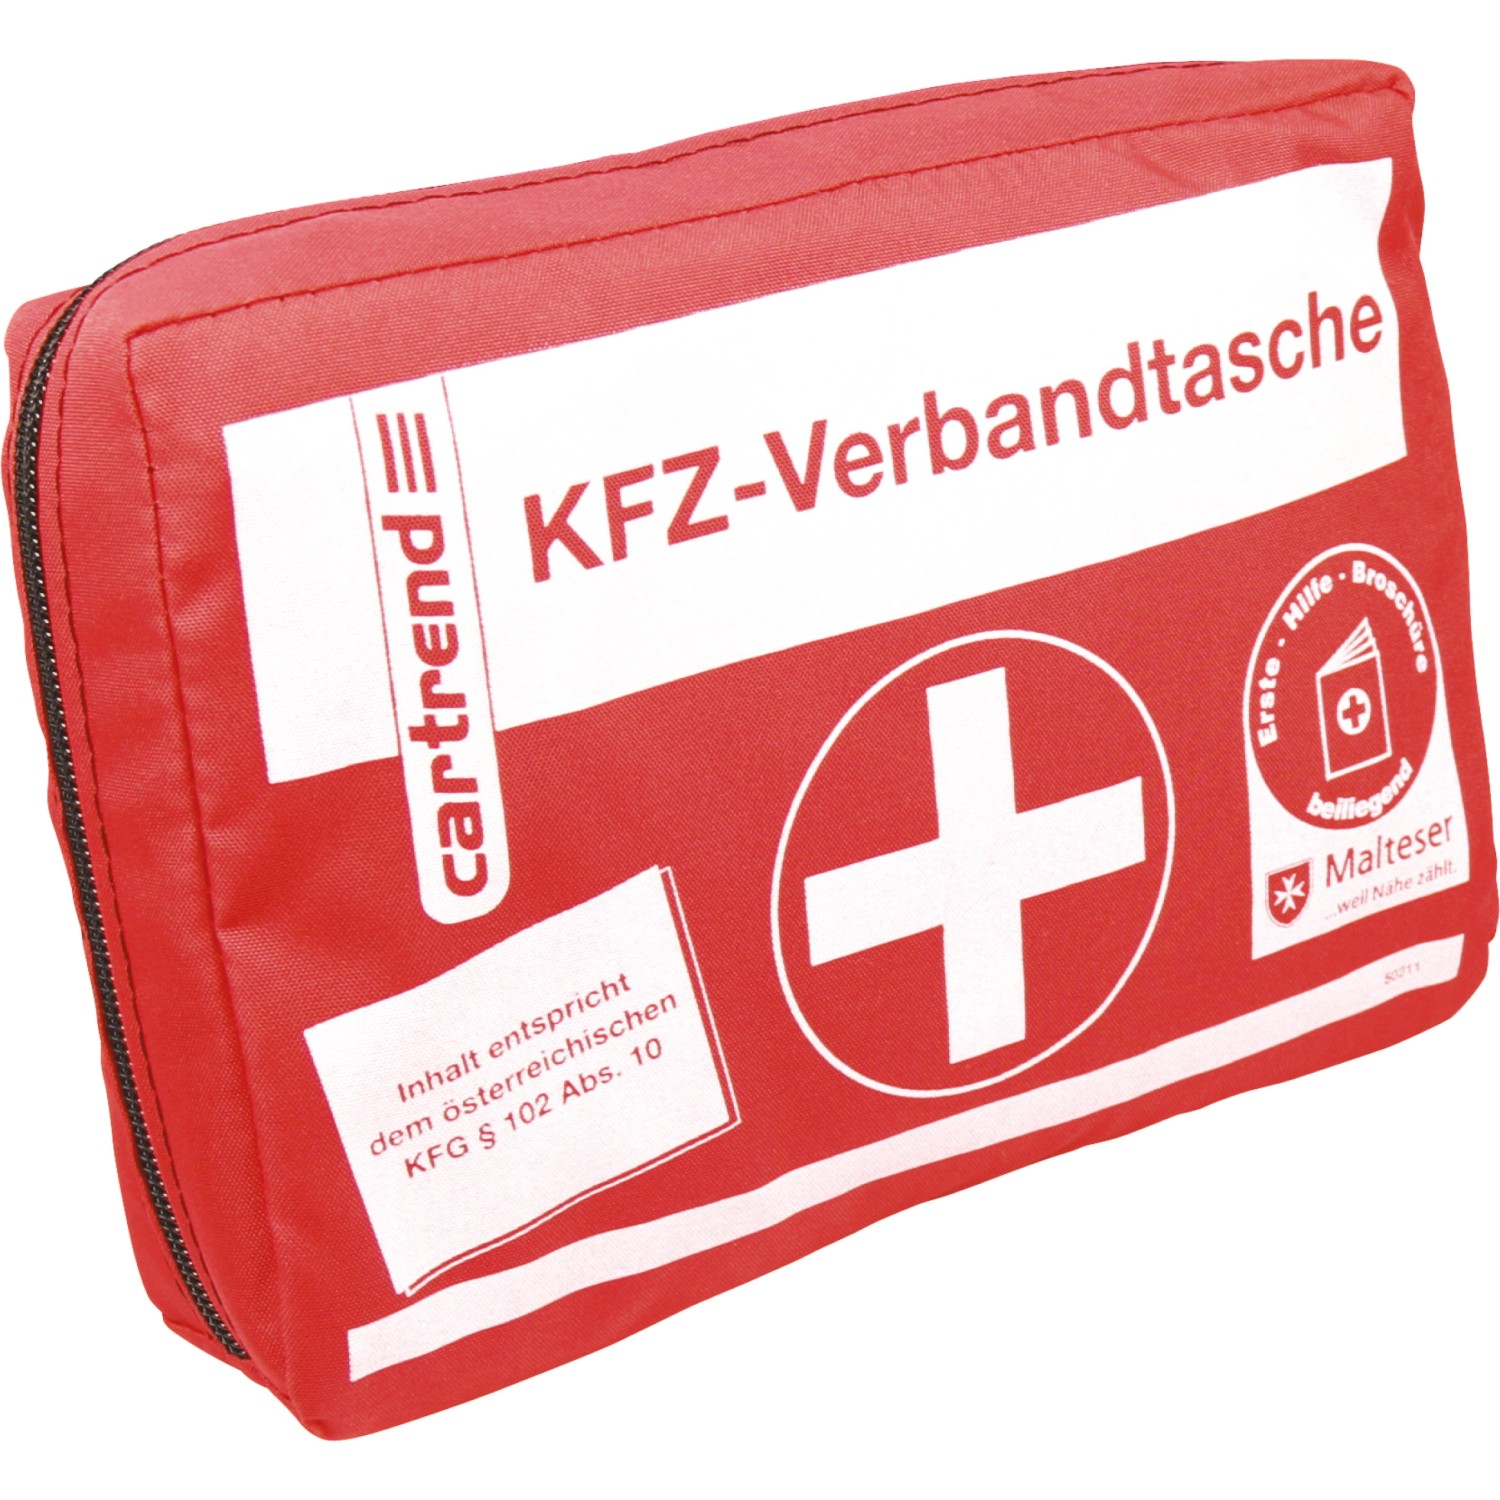 Cartrend Kfz-Verbandskasten Classic Blau DIN 13164-2022 kaufen bei OBI